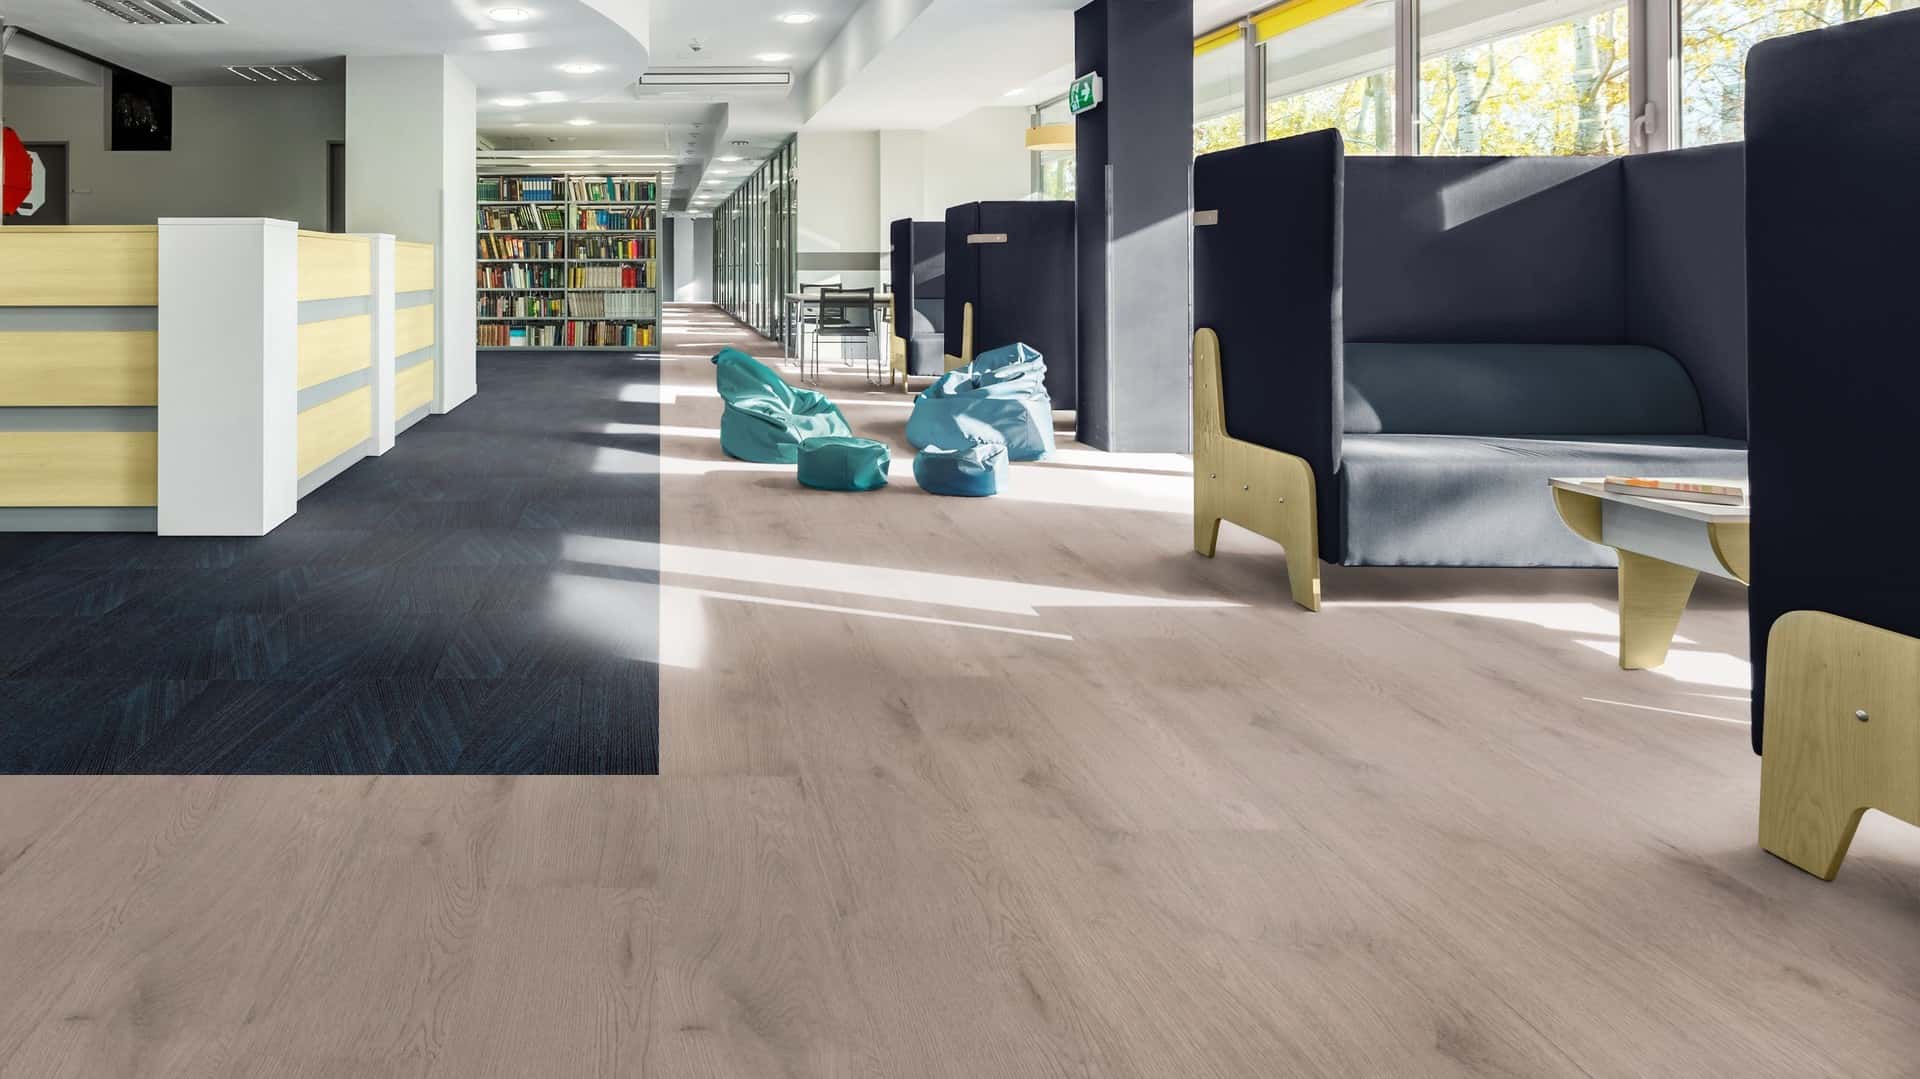 Milliken library flooring